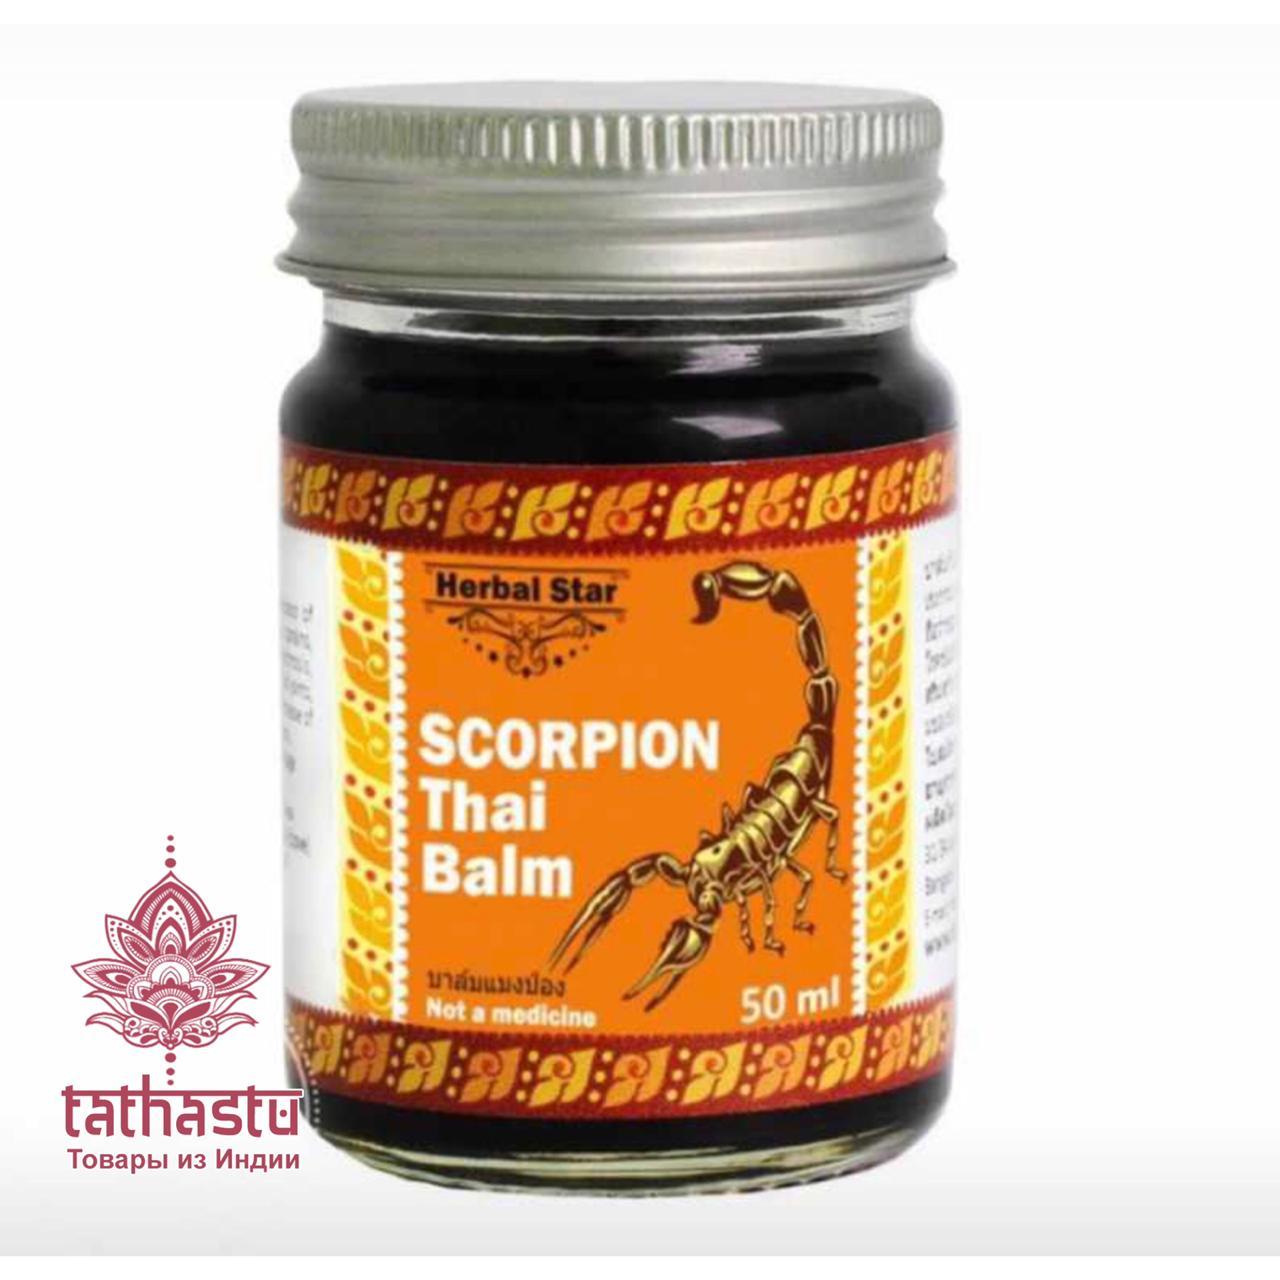 Тайский бальзам - тигровый бальзам с ядом скорпиона. Tathastu товары и индии